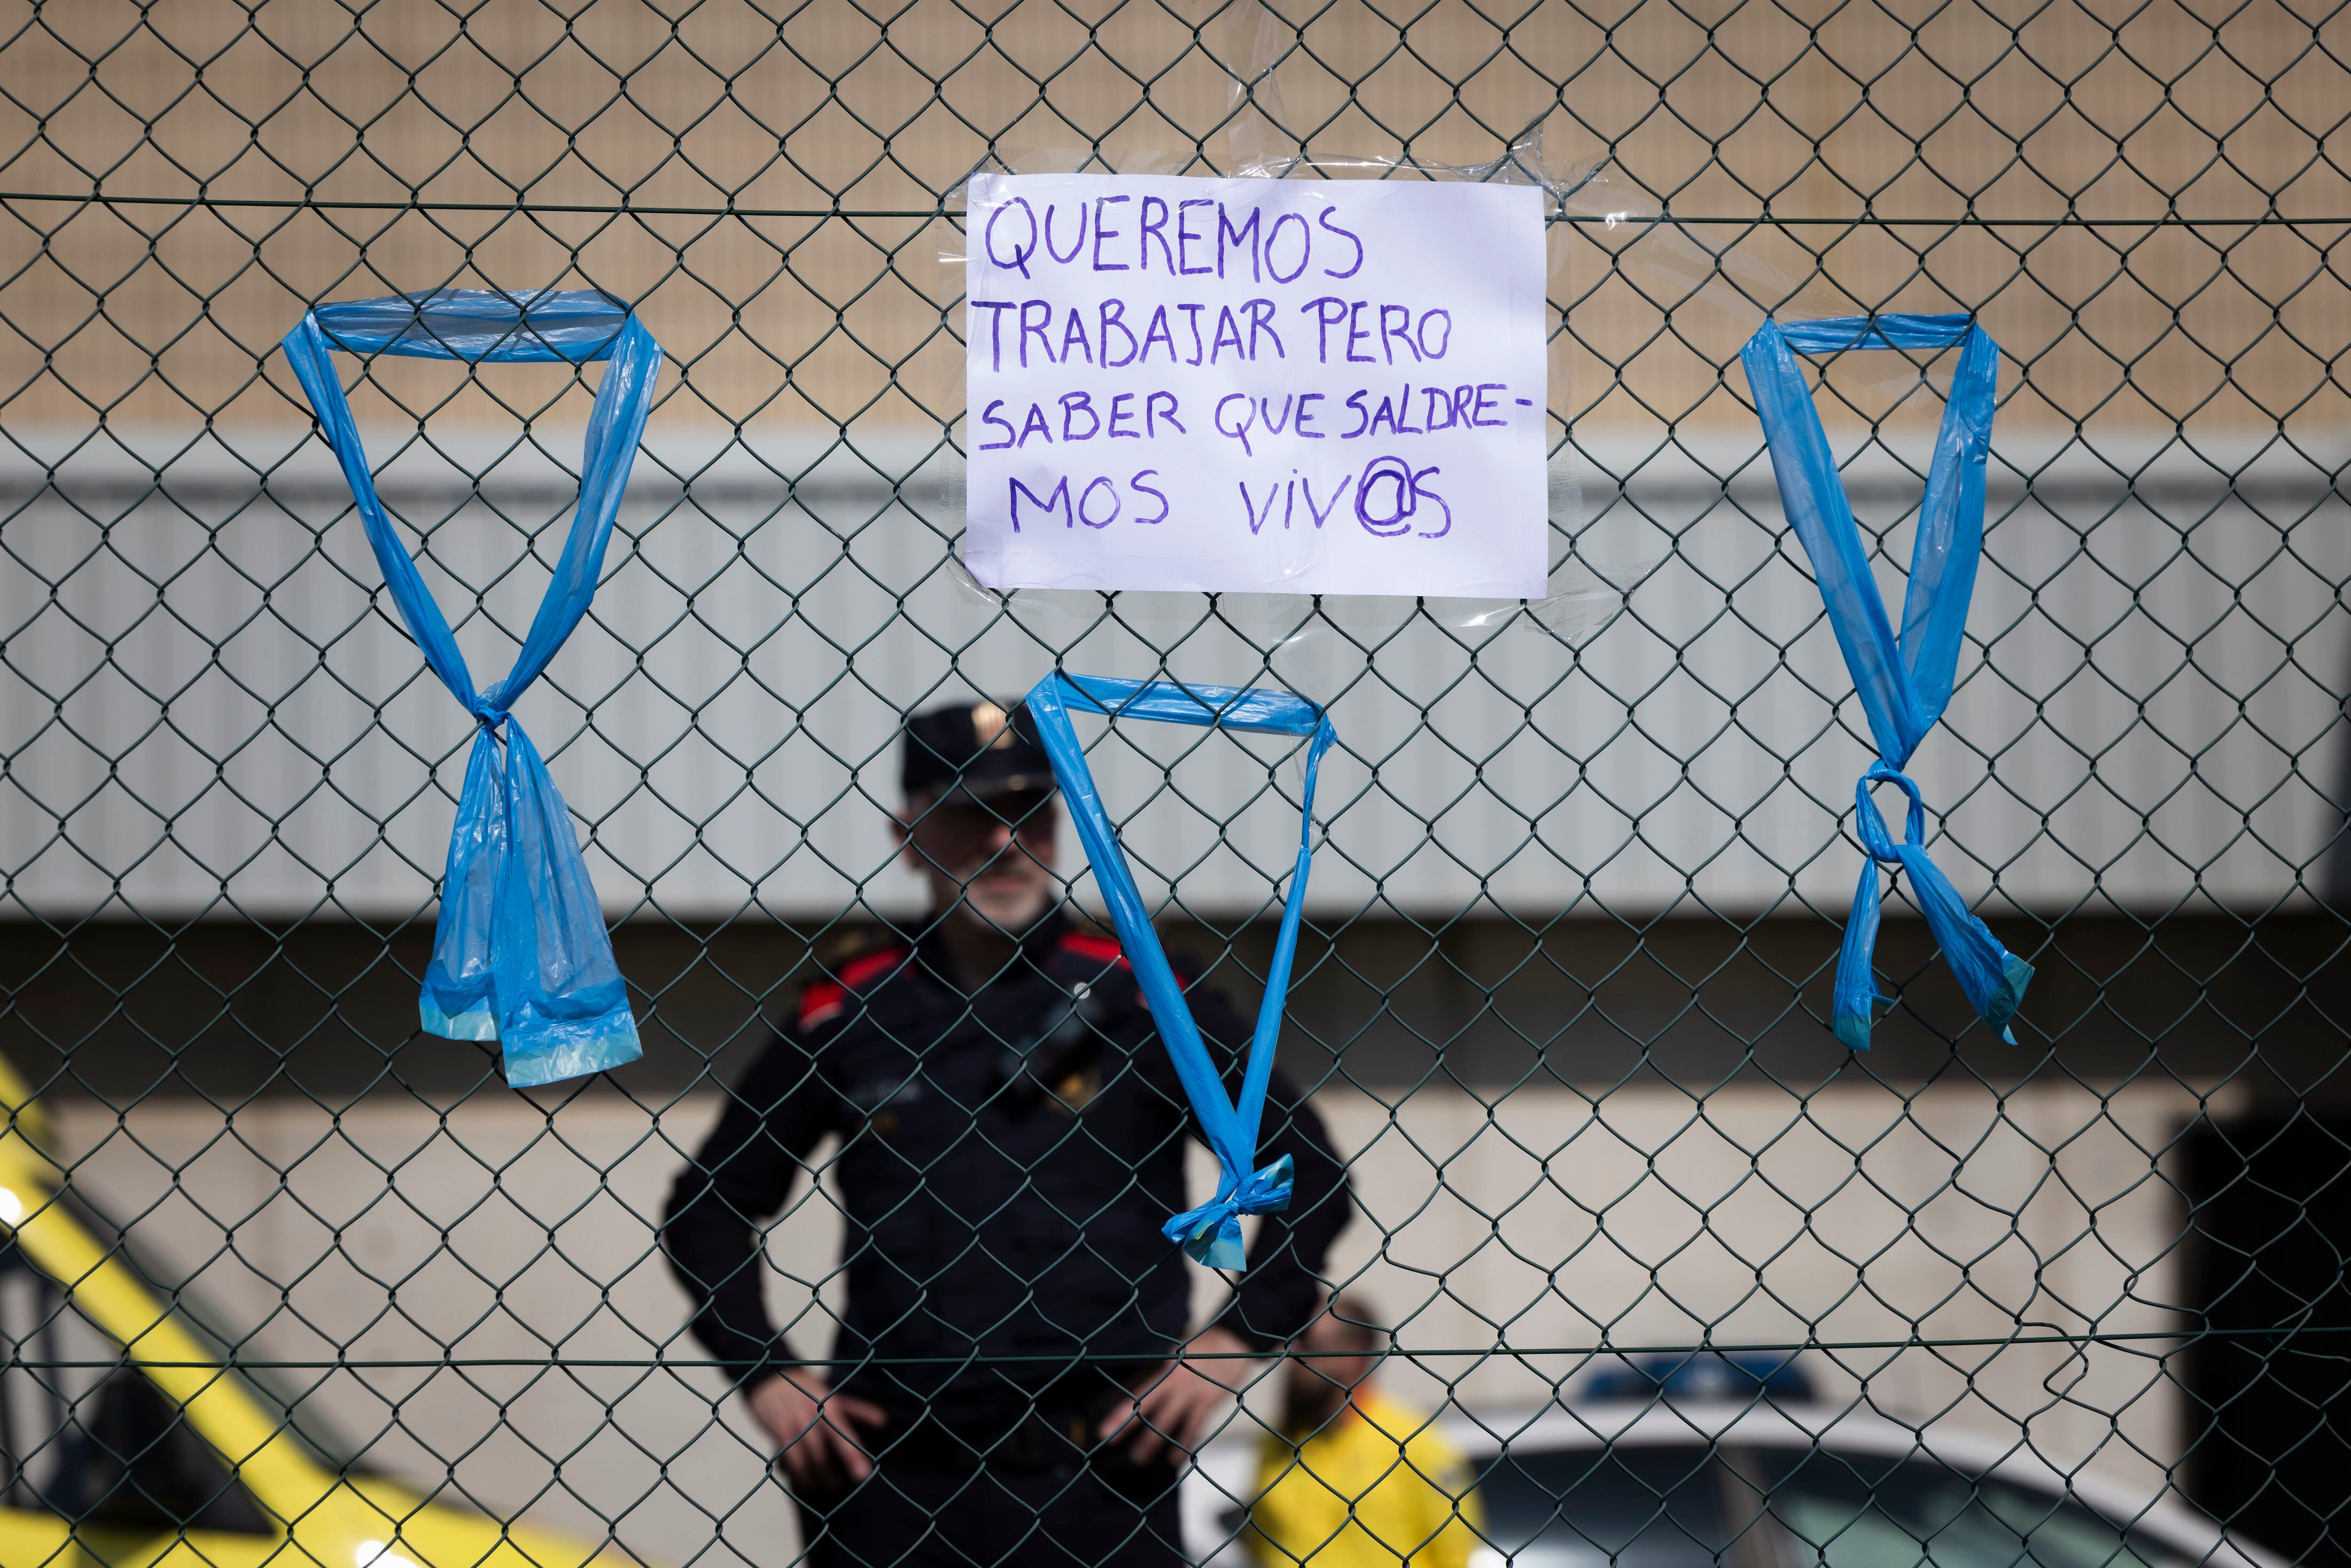 Lazos colgados en una valla durante la protesta de funcionarios de prisiones frente a la cárcel de Quatre Camins, este lunes.